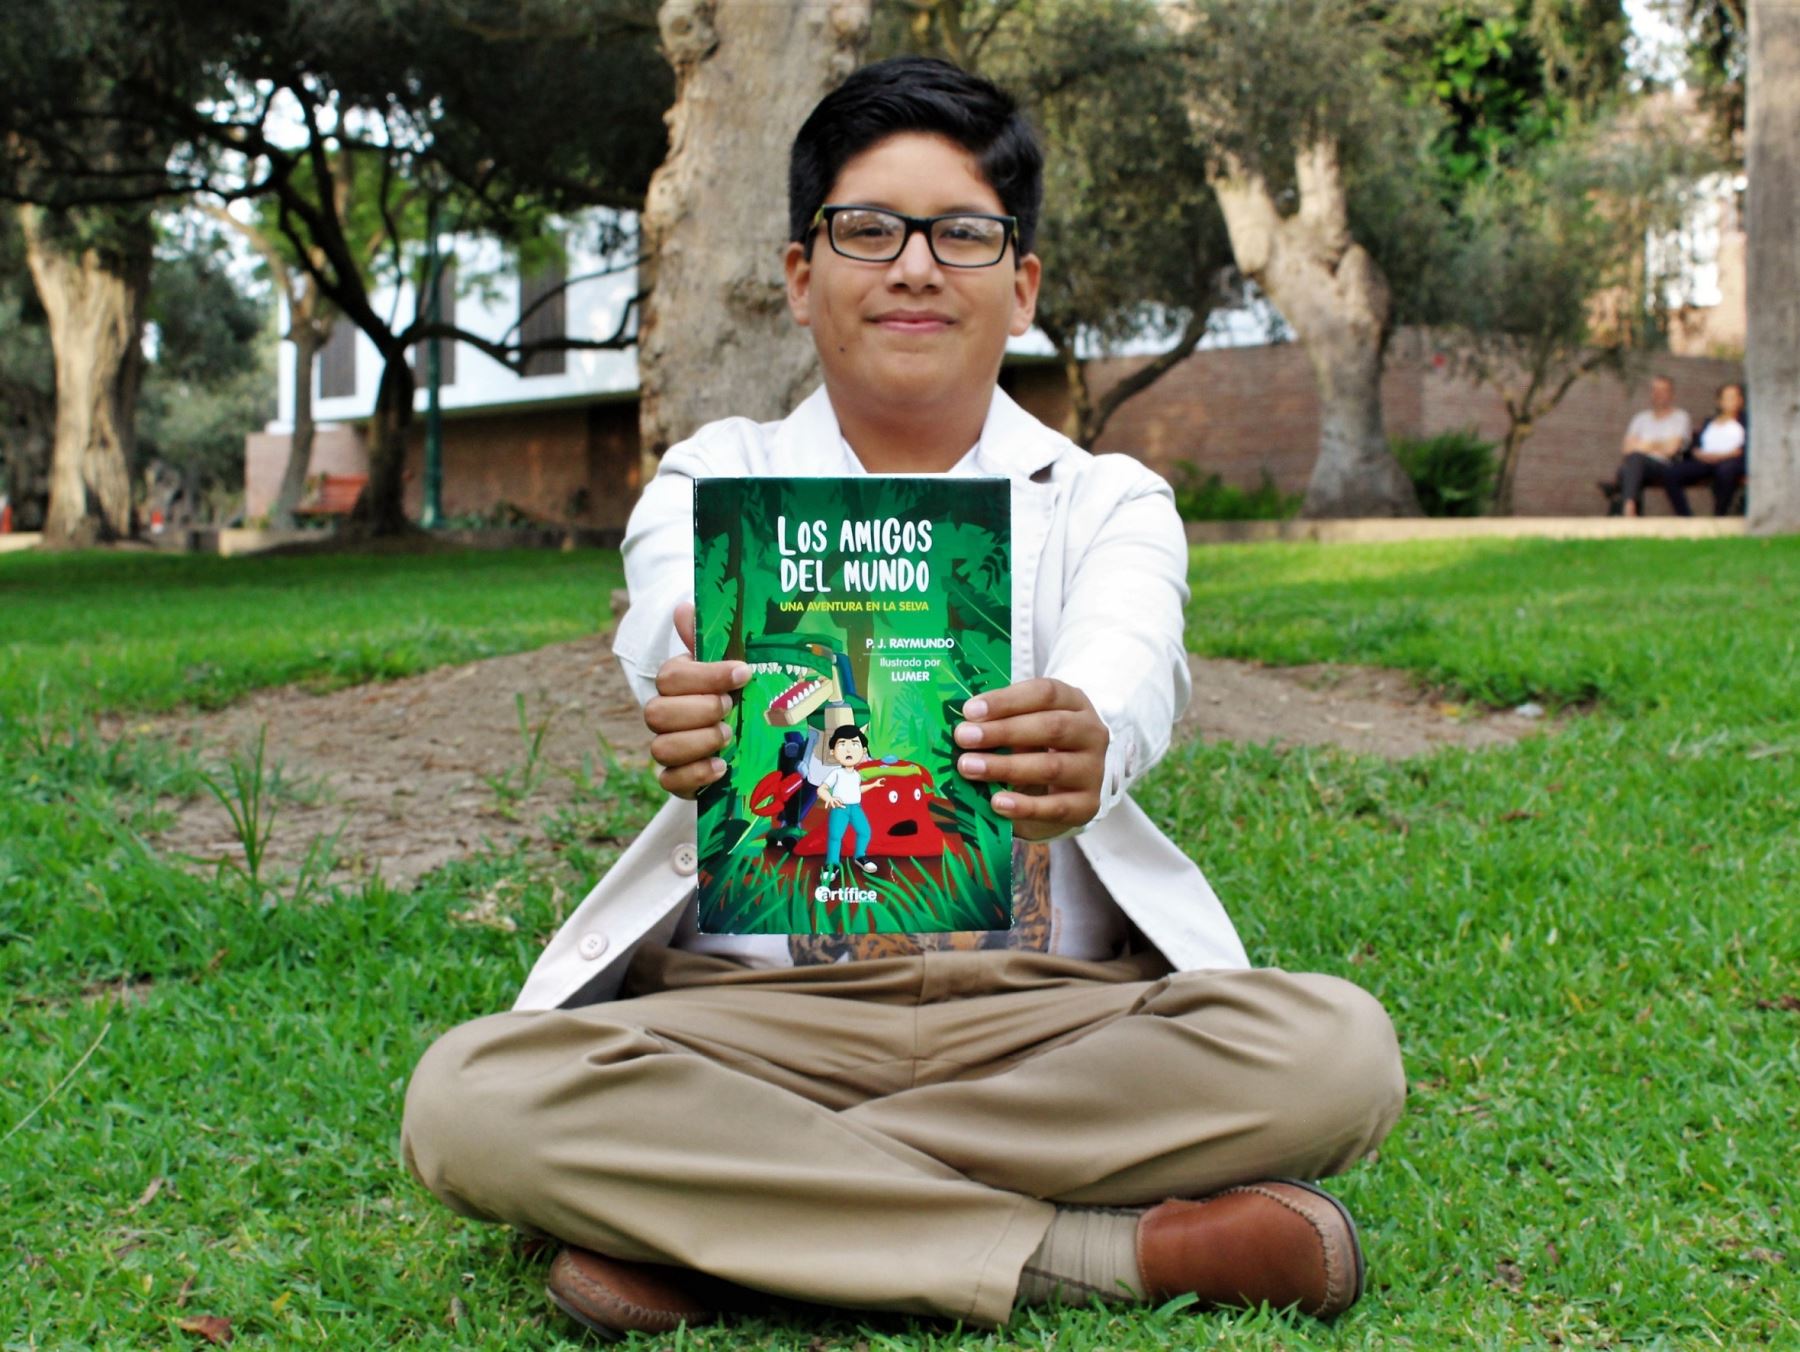 Raymundo se convierte en uno de los autores más jóvenes del Perú y en la I Feria Internacional del Libro de La Libertad presentará su libro "Los amigos del mundo. Una aventura en la selva". ANDINA/Difusión